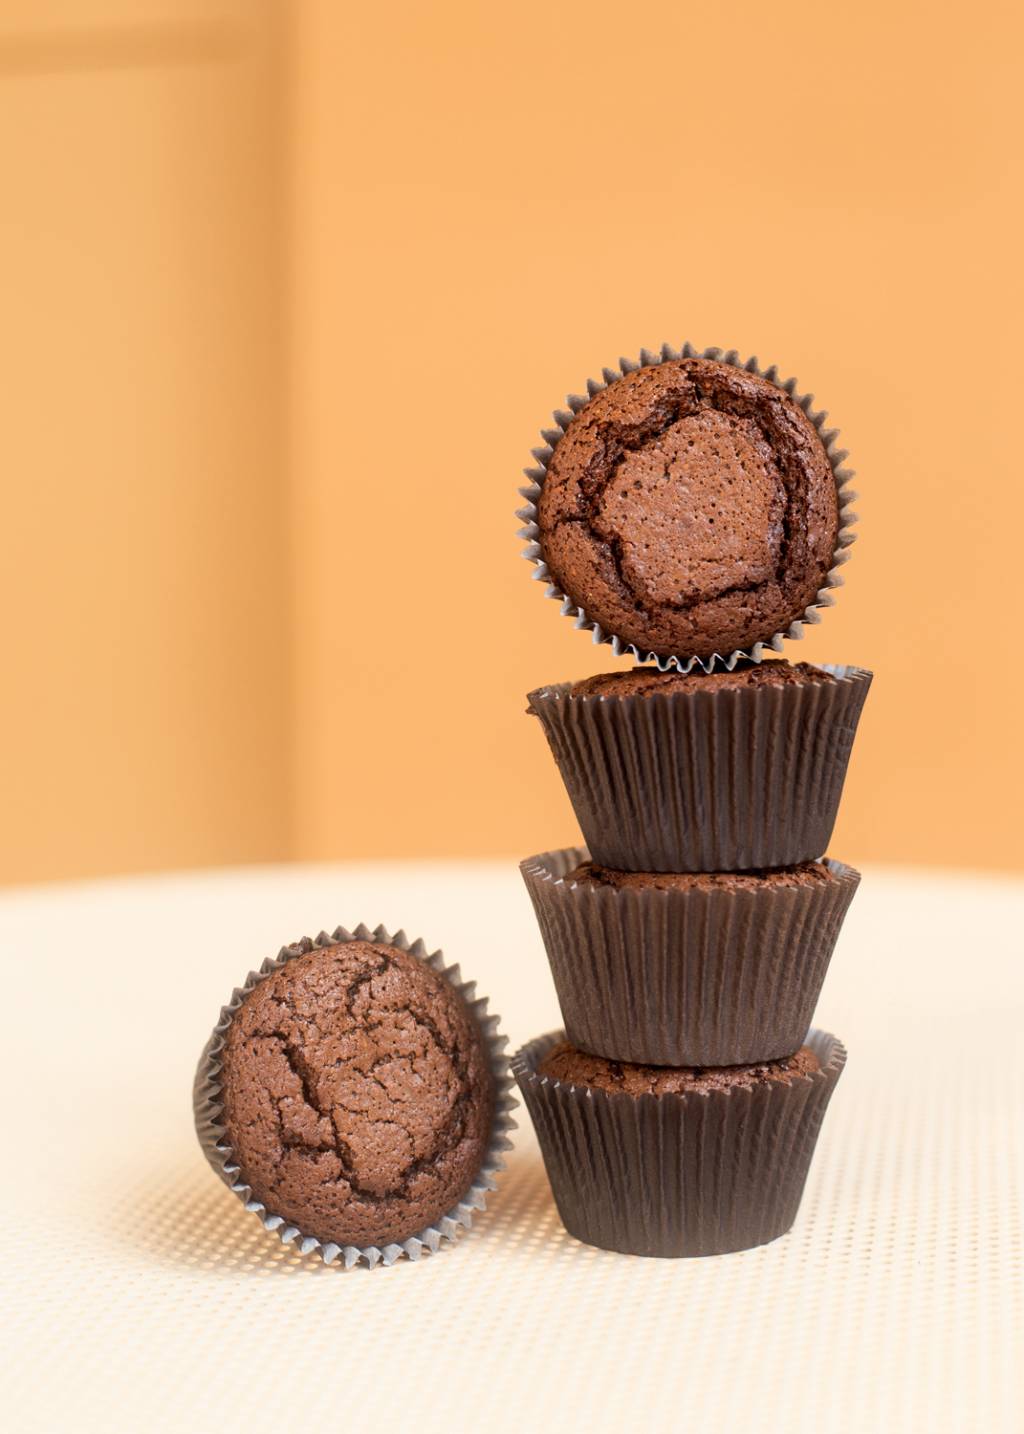 Quatro brownies de chocolate em forminhas empilhados ao lado de outro brownie.